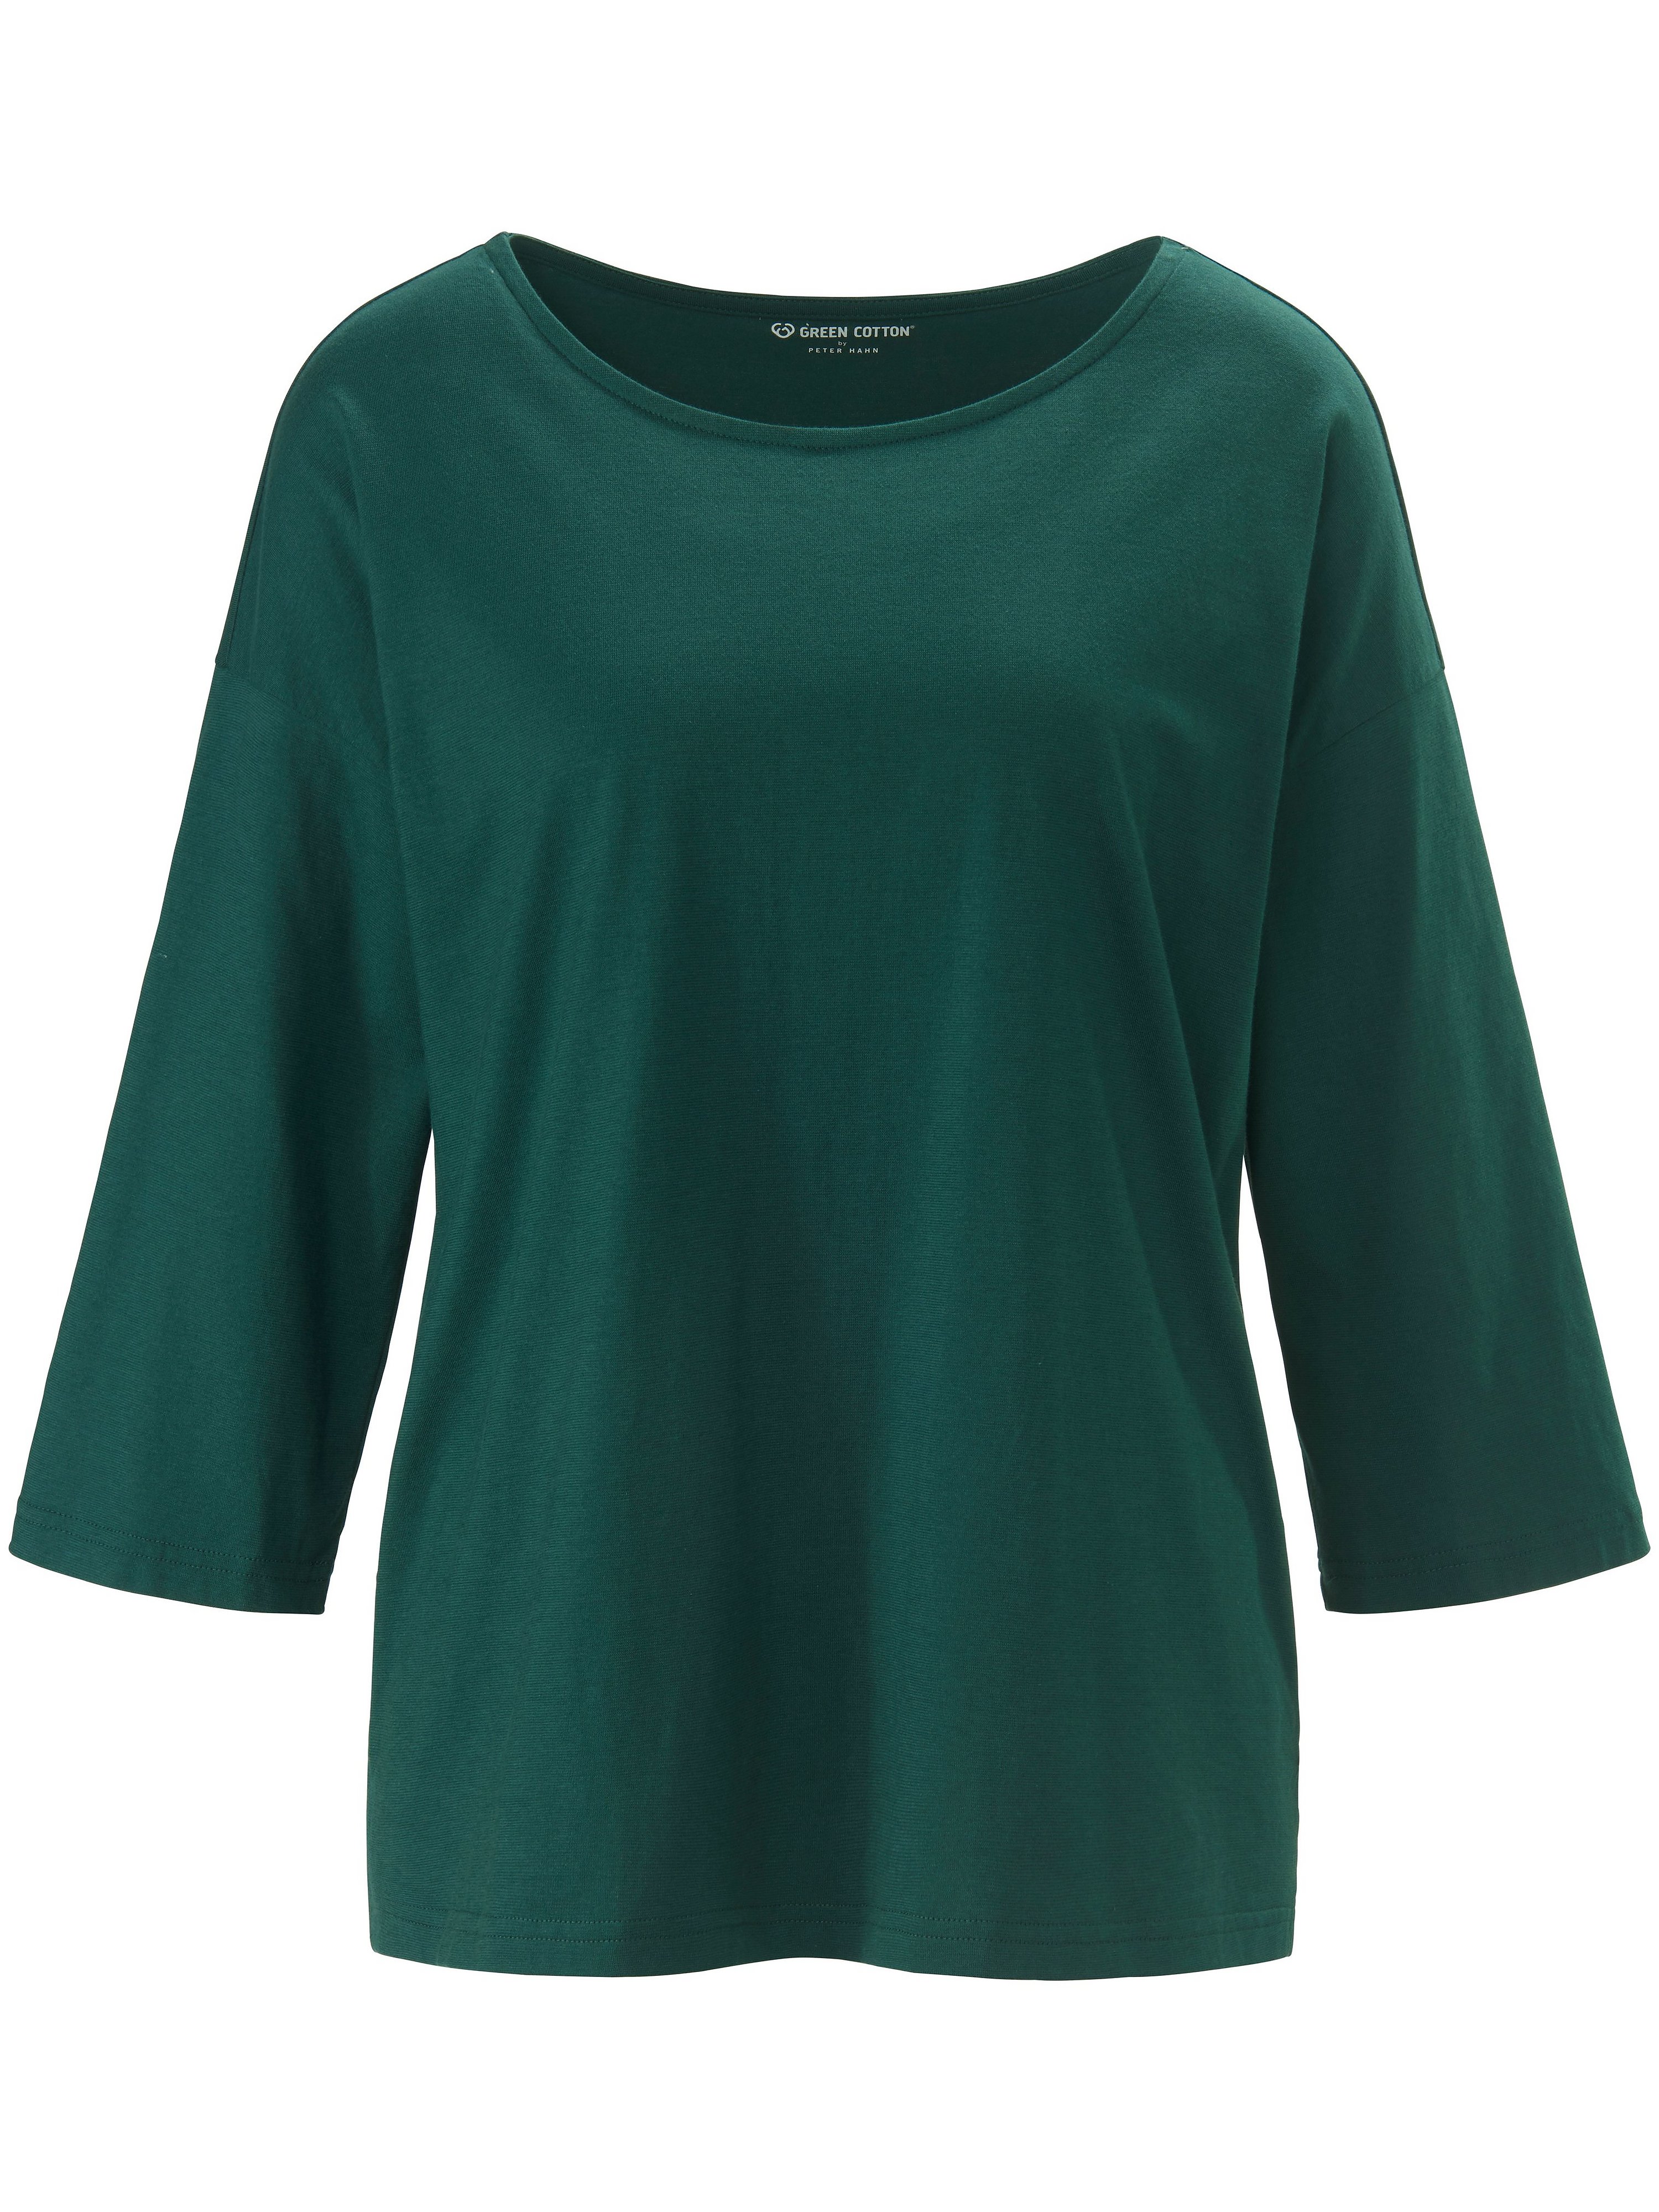 Le T-shirt 100% coton  Green Cotton vert taille 46